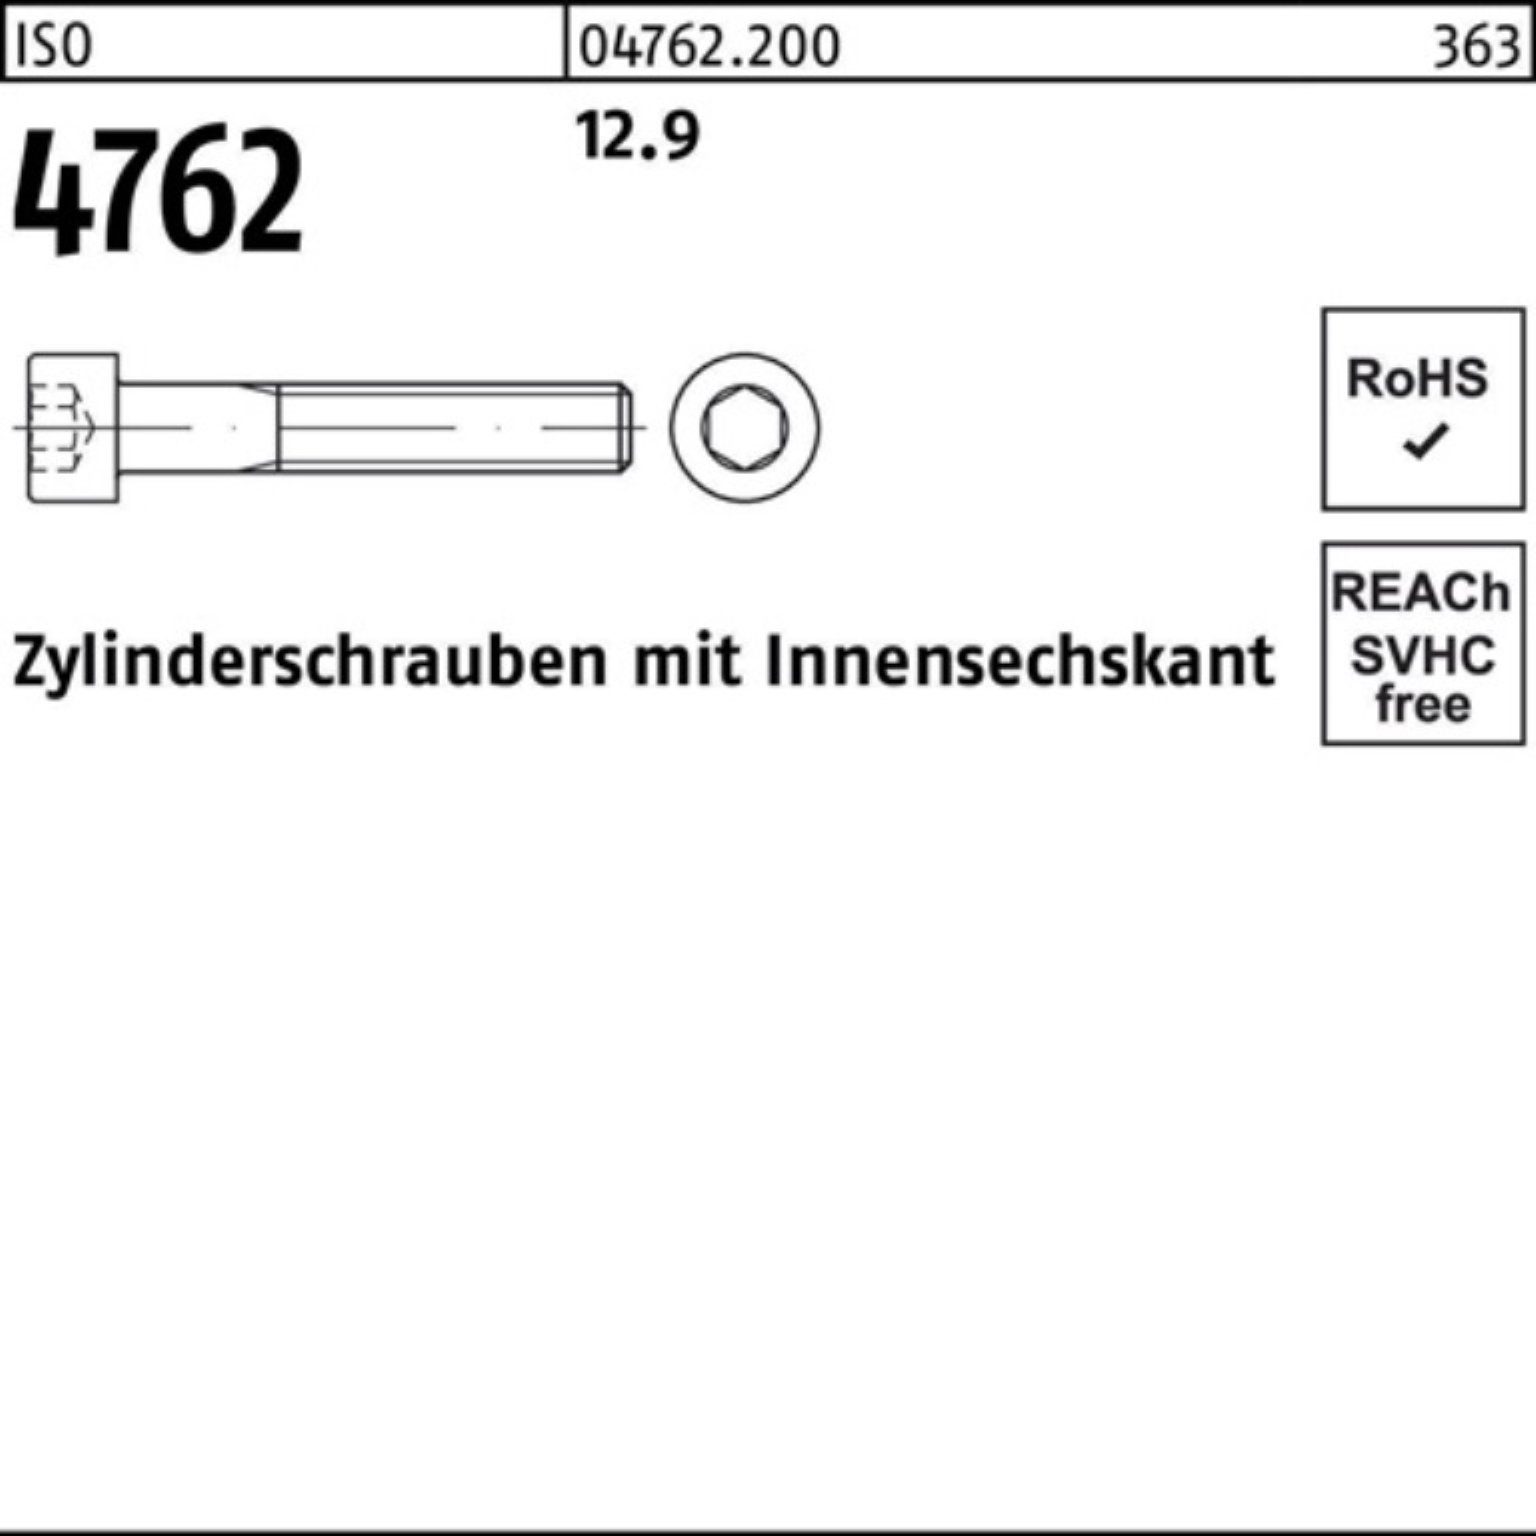 I Innen-6kt Zylinderschraube M30x 100er 70 4762 ISO Zylinderschraube Pack 12.9 Stück 1 Reyher